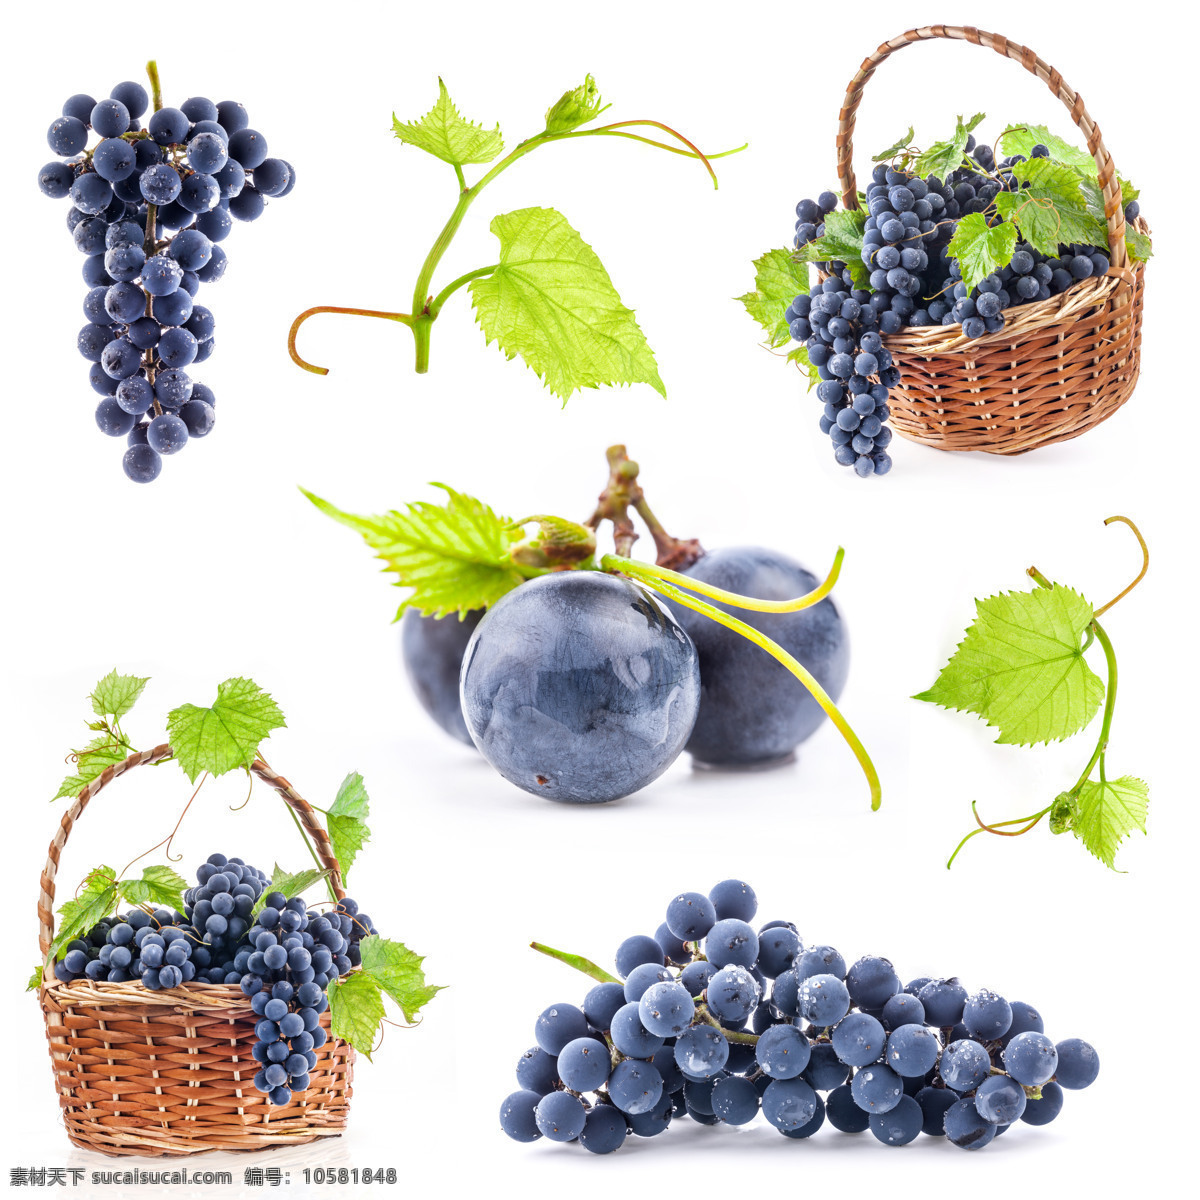 葡萄 水果 紫葡萄 黑葡萄 篮子 竹篮子 葡萄须 绿叶 新鲜水果 生物世界